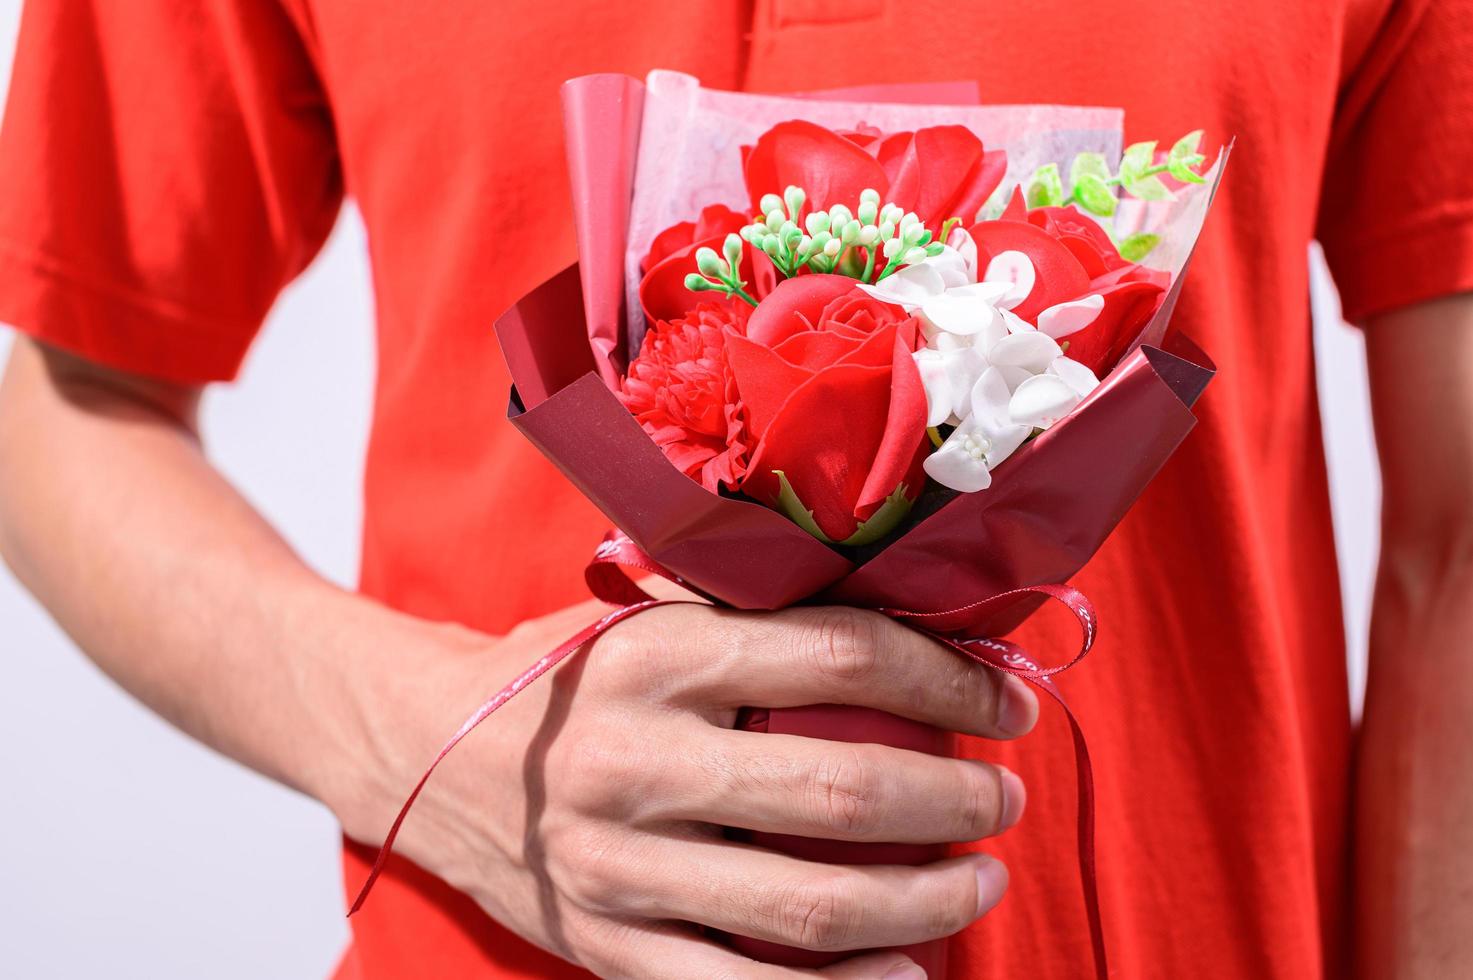 persona vestida de rojo sosteniendo flores foto